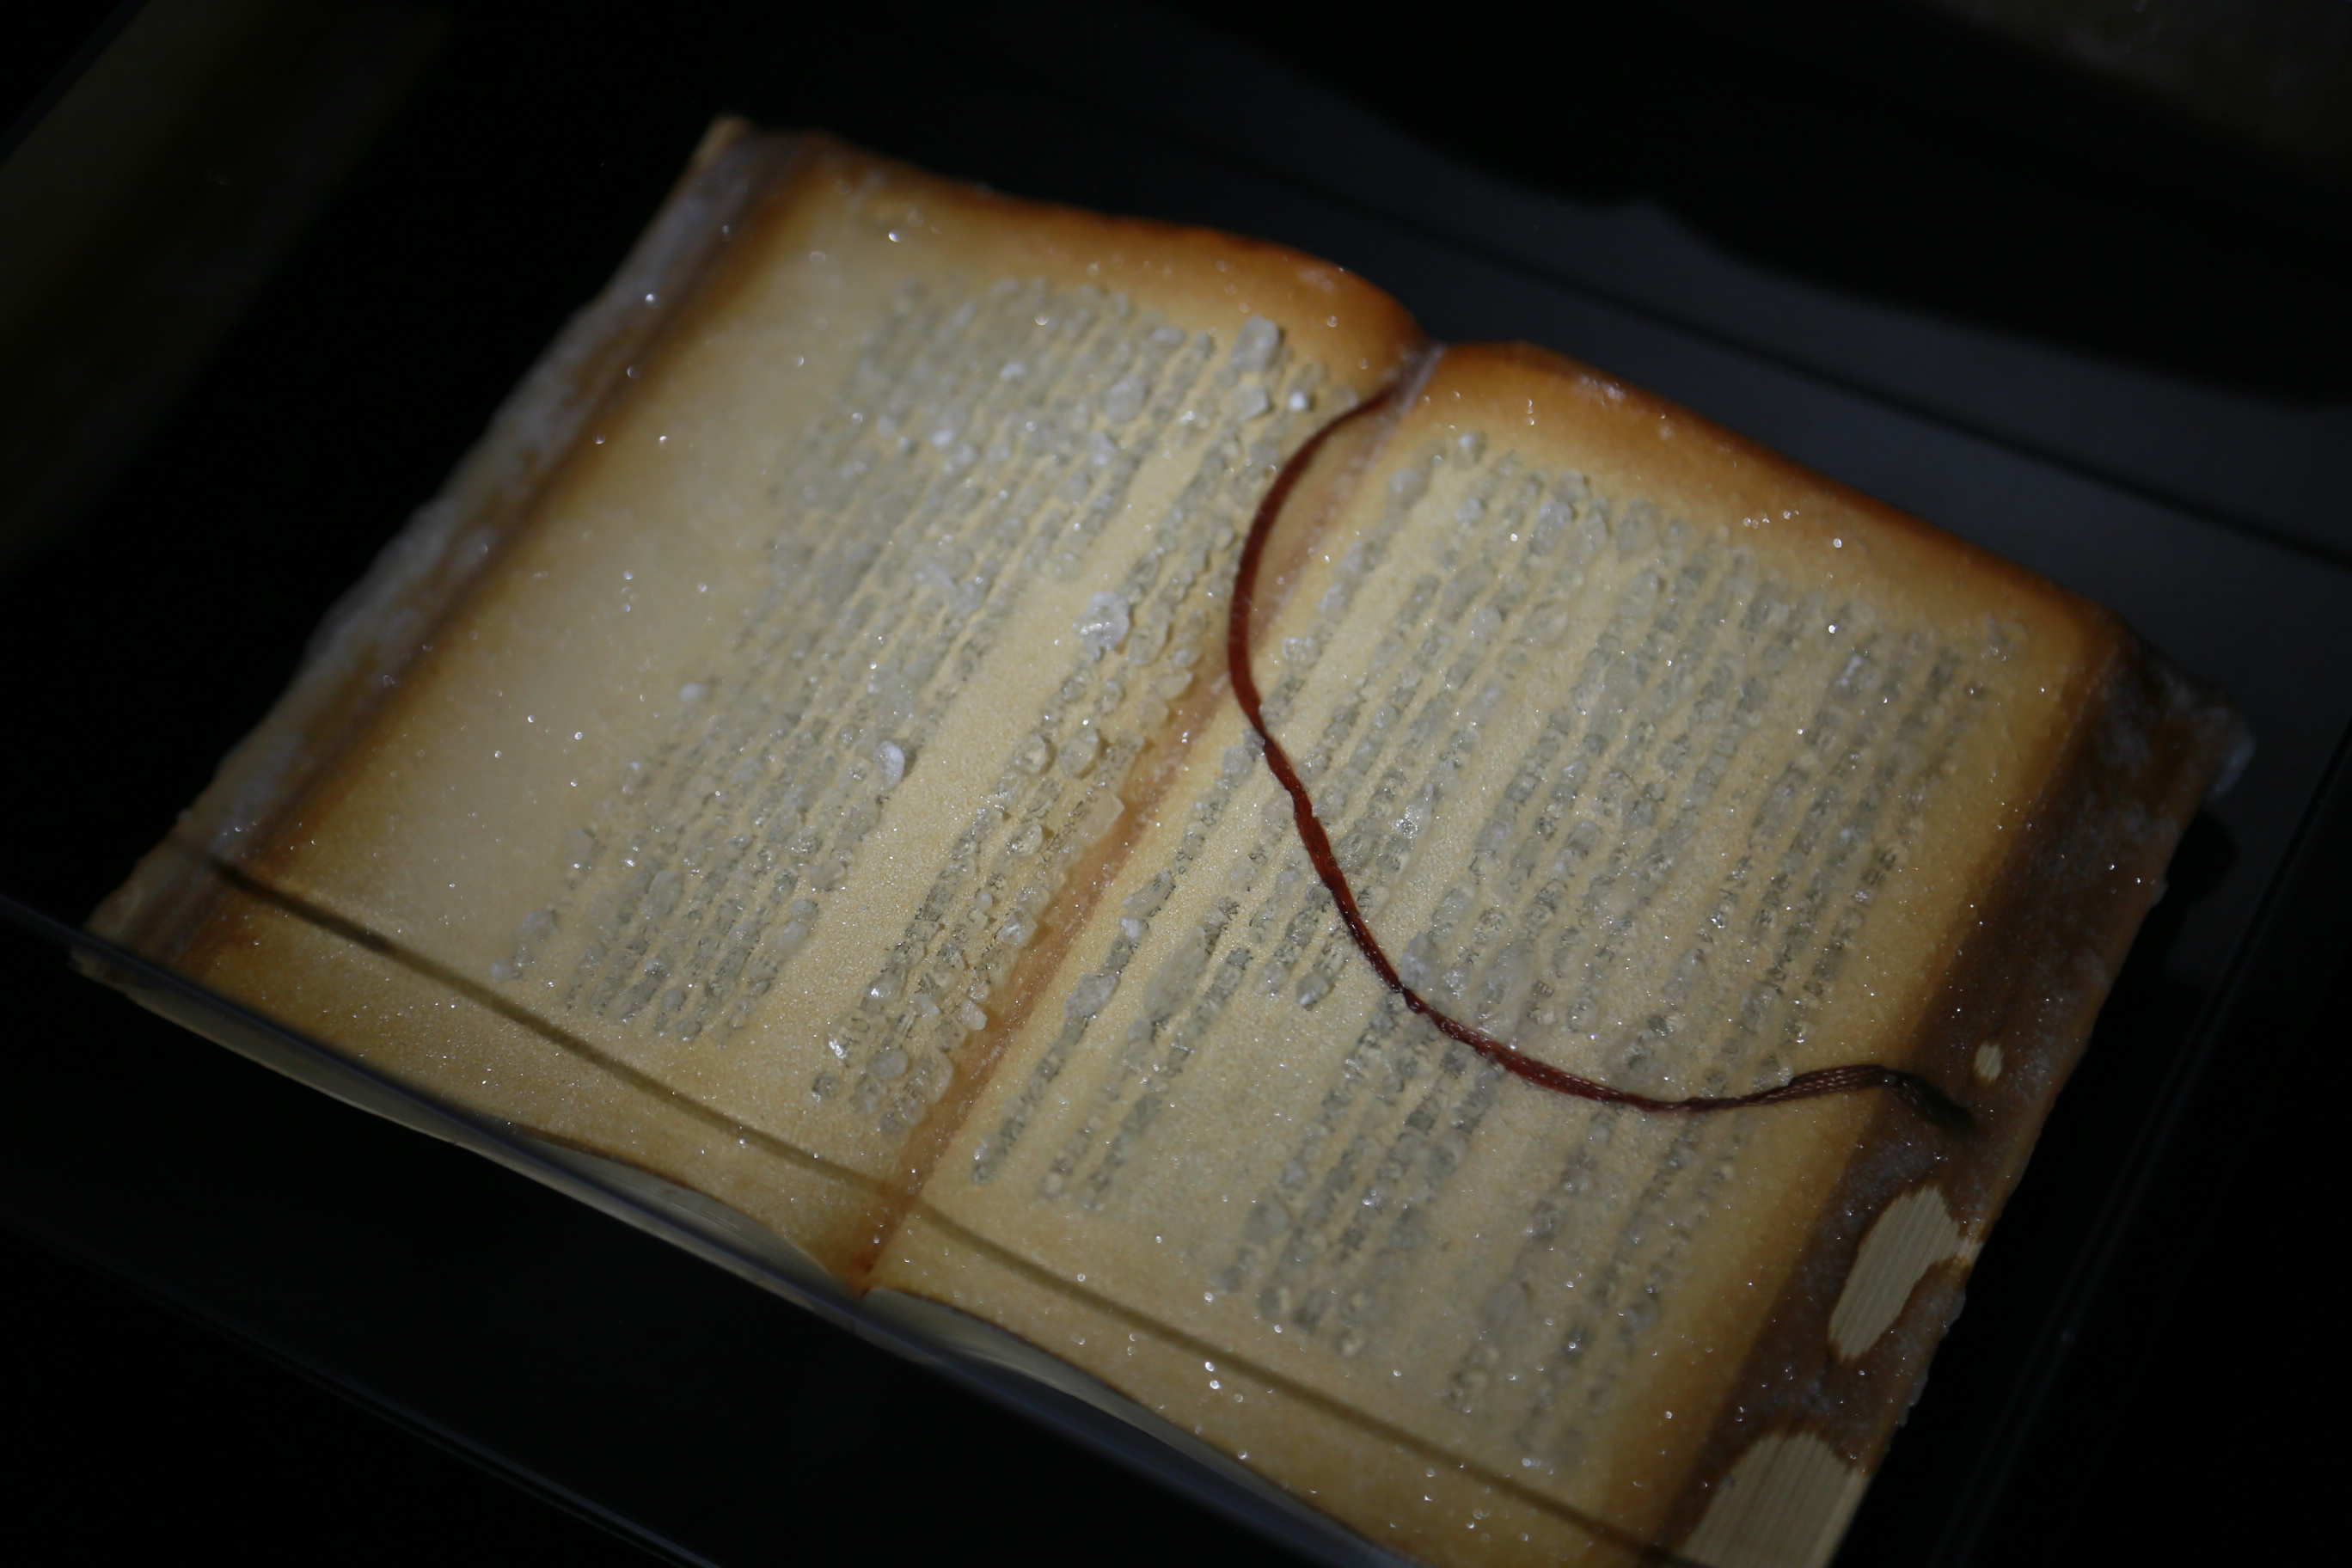 食料を保存する「砂糖漬け」の技法を使って本を固めた作品。記憶を砂糖で閉じ込められた本は陶器のような質感を帯びている